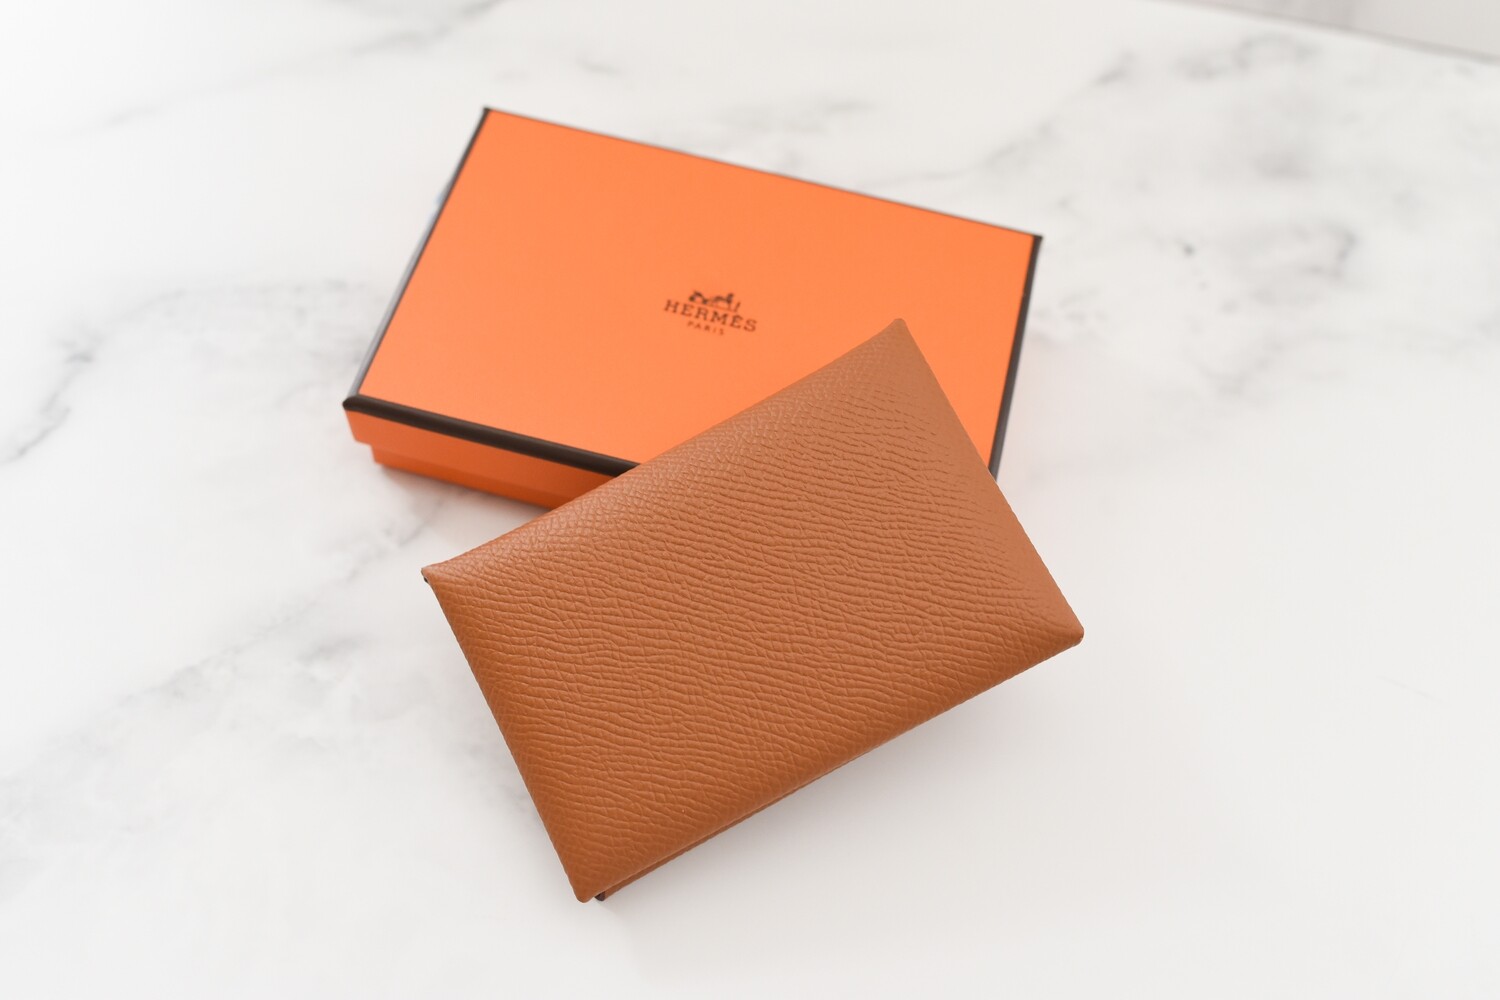 Hermes SLG Calvi Cardholder Wallet, Epsom Leather in Gold, New in Box ...